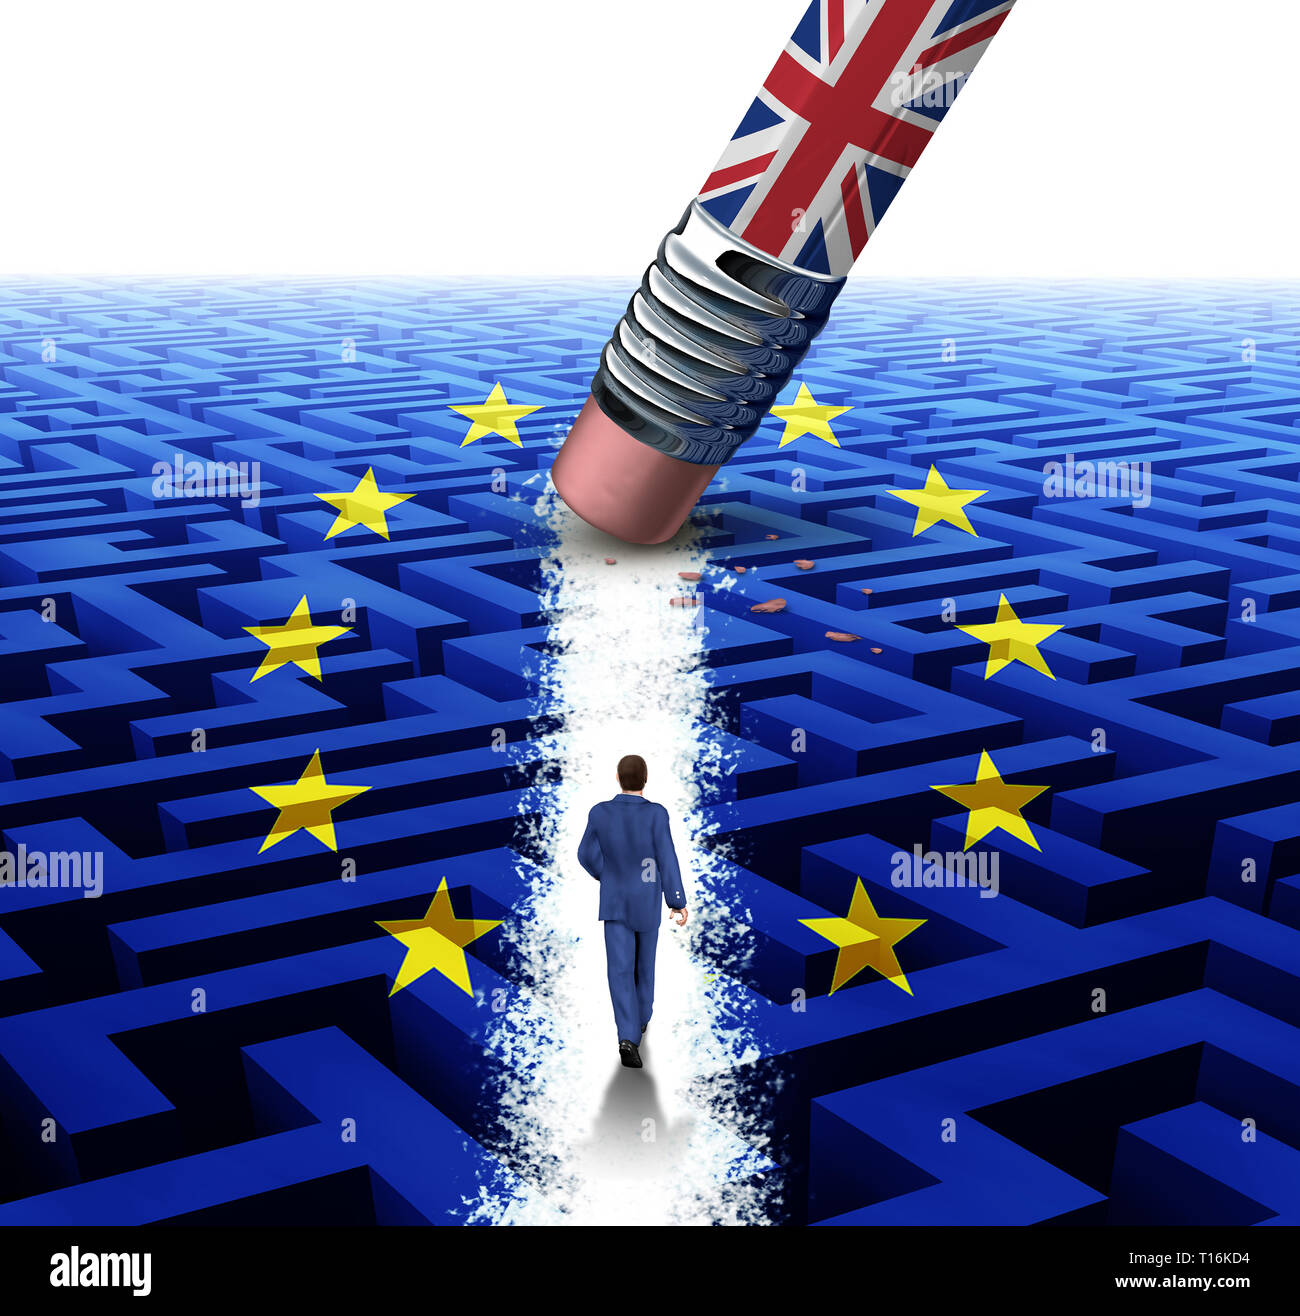 Le Royaume-Uni et l'Union européenne et la Grande-Bretagne Europe changement et décision l'indépendance comme un brexit quitter ou nouvelle notion de référendum ou vote Euro zone crisis. Banque D'Images